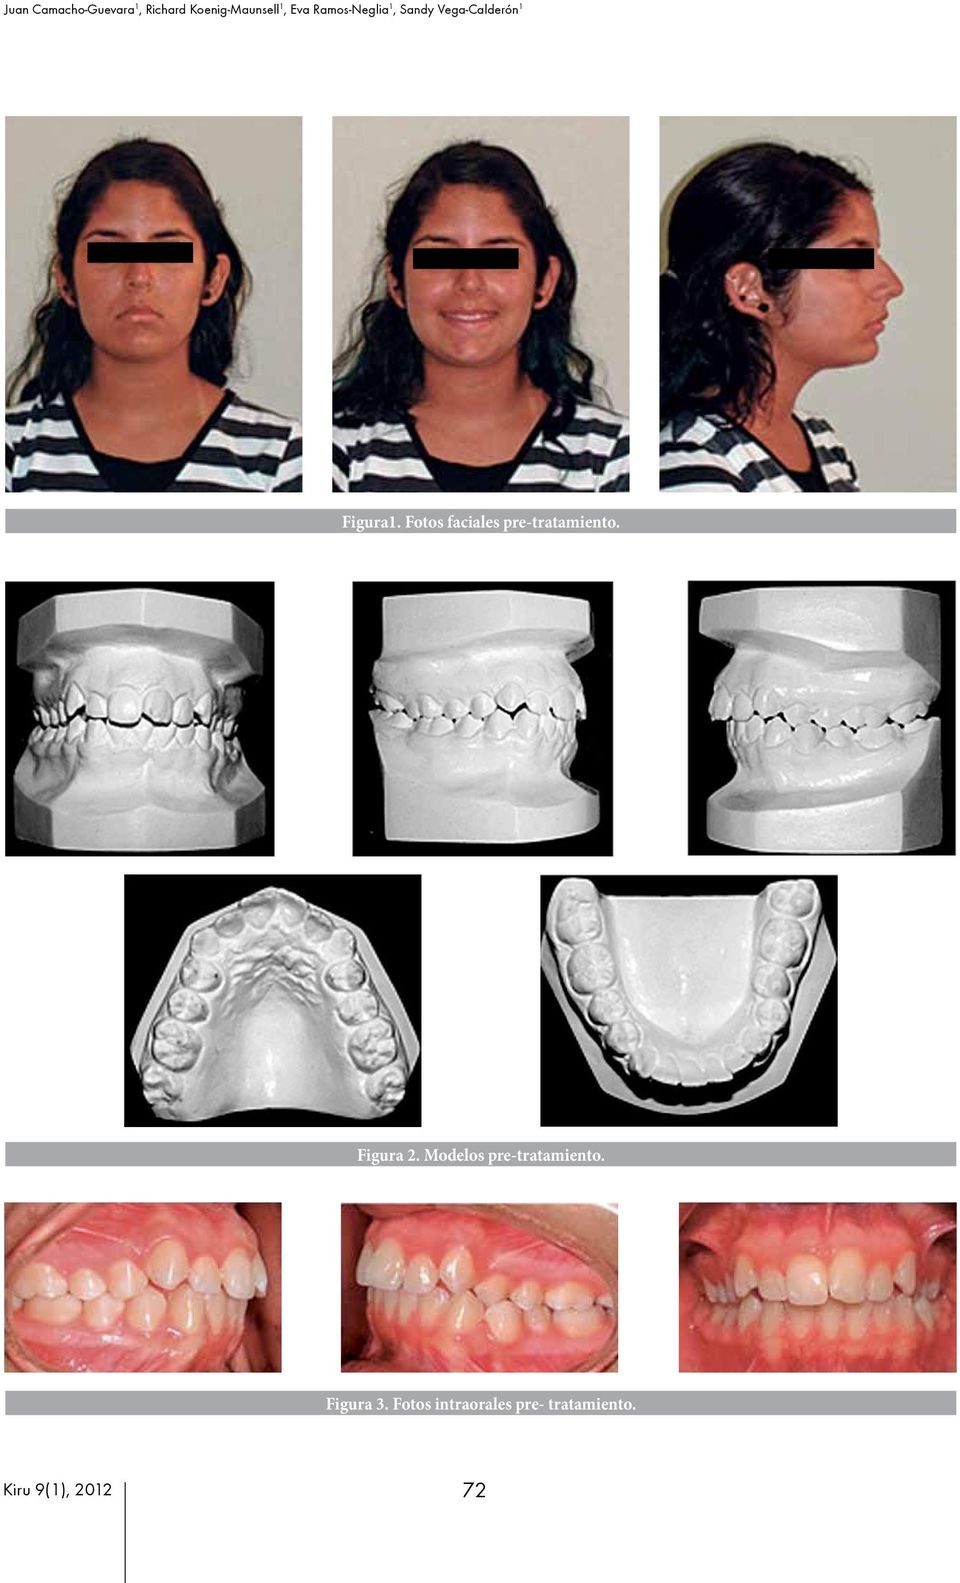 Fotos faciales pre-tratamiento. Figura 2.